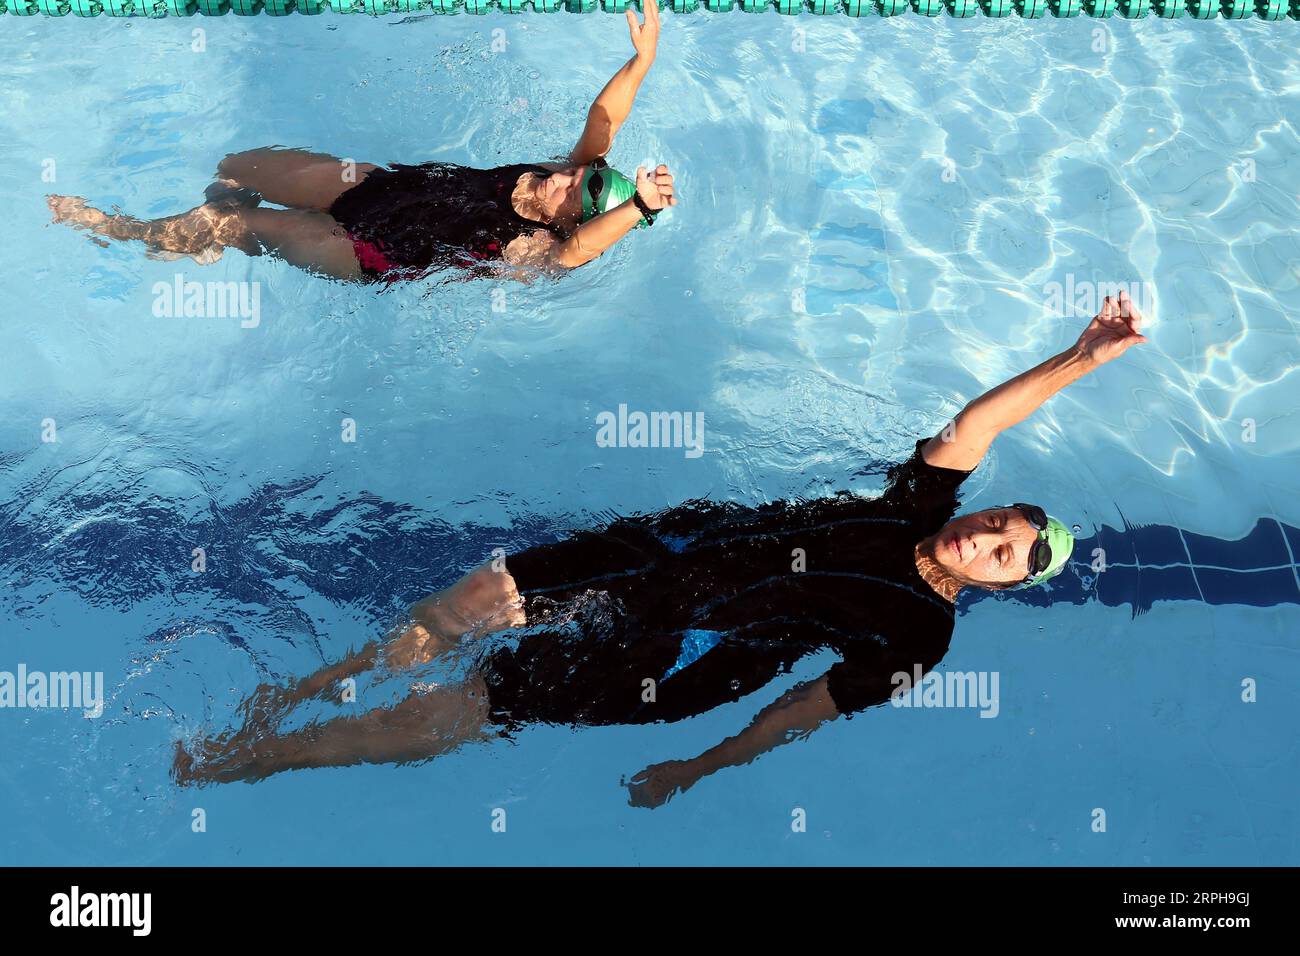 191103 -- ALESSANDRIA, 3 novembre 2019 -- anziani nuotatori egiziani nuotano ad Alessandria, Egitto, il 31 ottobre 2019. Masters nuoto, un'attività ricreativa in rapida crescita, è una classe speciale di nuoto competitivo per i nuotatori di età pari o superiore a 25 anni. In Egitto, Masters nuoto è iniziato dai primi anni '2000, e si sta diffondendo in particolare negli ultimi anni. PER ANDARE CON caratteristiche: Anziani nuotatori egiziani Masters dimostrano che l'età è solo un numero SPEGYPT-ALESSANDRIA-ANZIANI NUOTATORI MAESTRI AhmedxGomaa PUBLICATIONxNOTxINxCHN Foto Stock